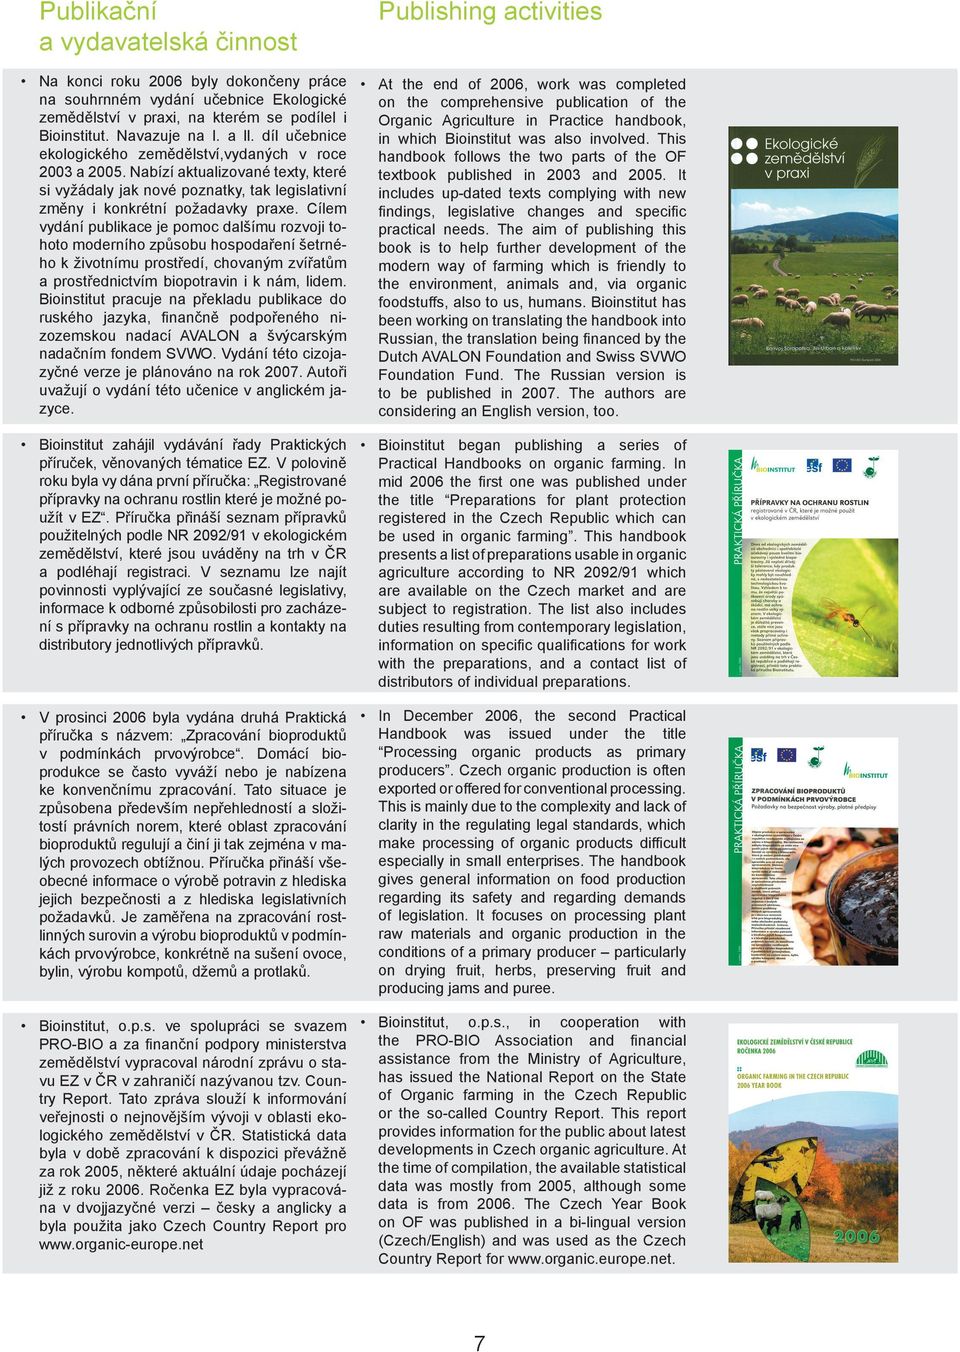 This ekologického zemědělství,vydaných v roce handbook follows the two parts of the OF 2003 a 2005. Nabízí aktualizované texty, které textbook published in 2003 and 2005.